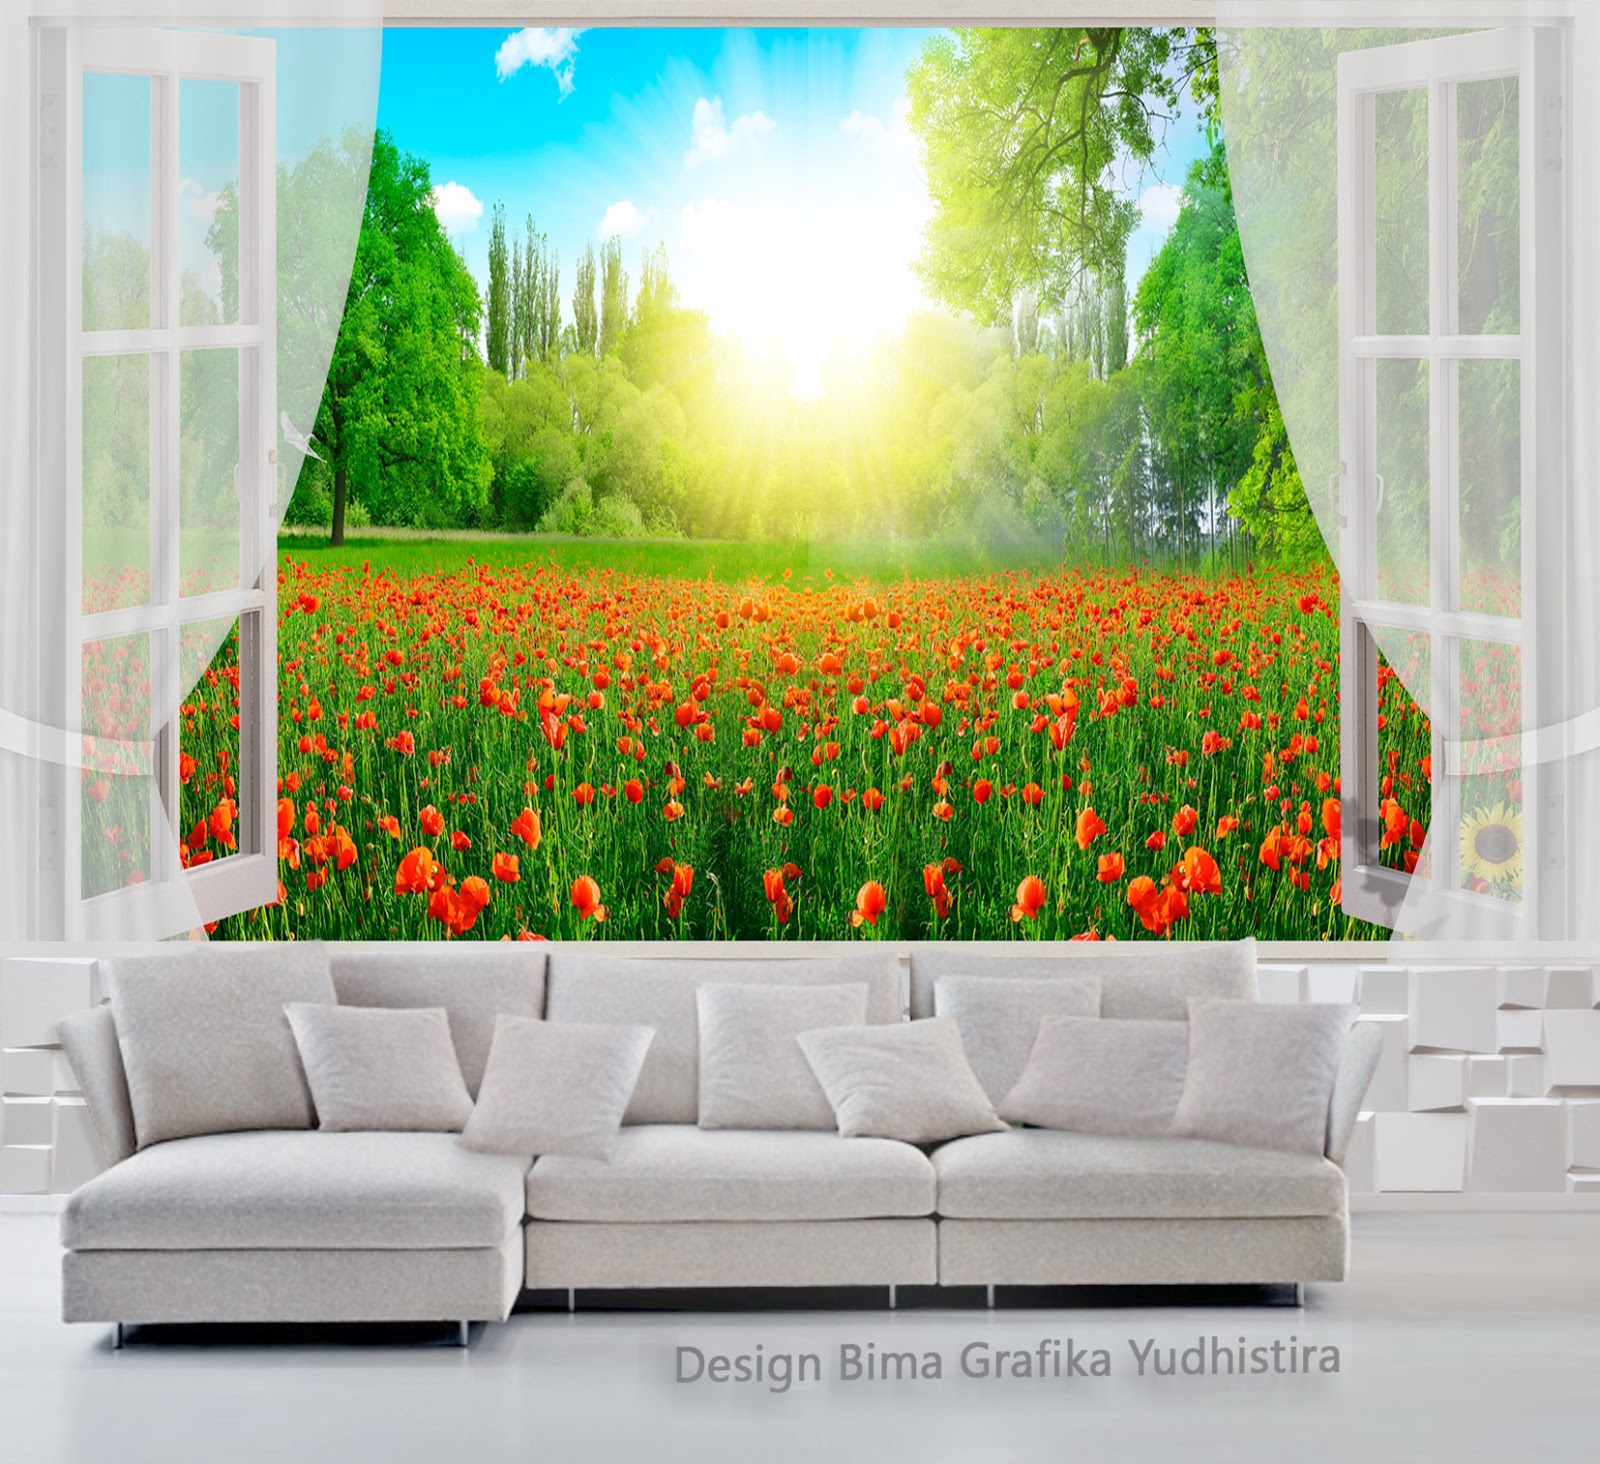 wallpaper dinding 3d,nature,natural landscape,green,modern art,mural